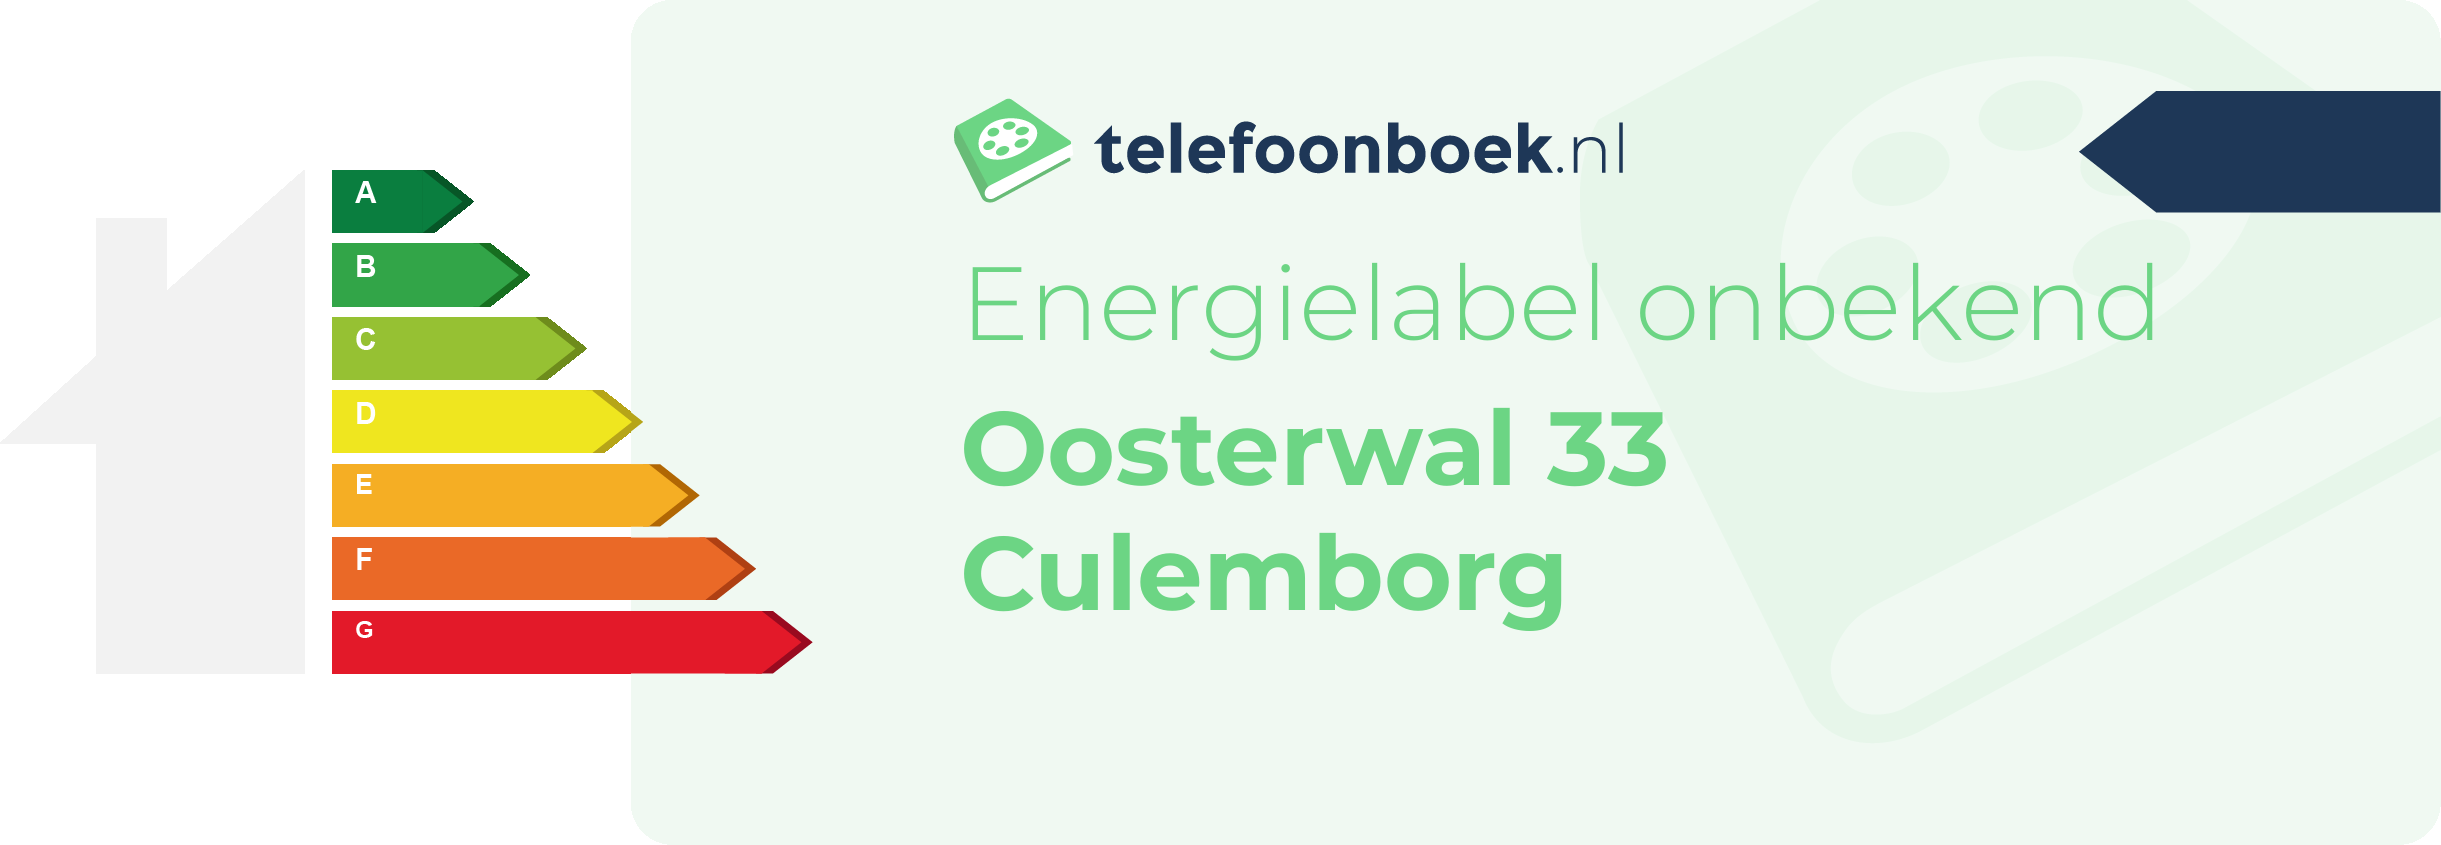 Energielabel Oosterwal 33 Culemborg